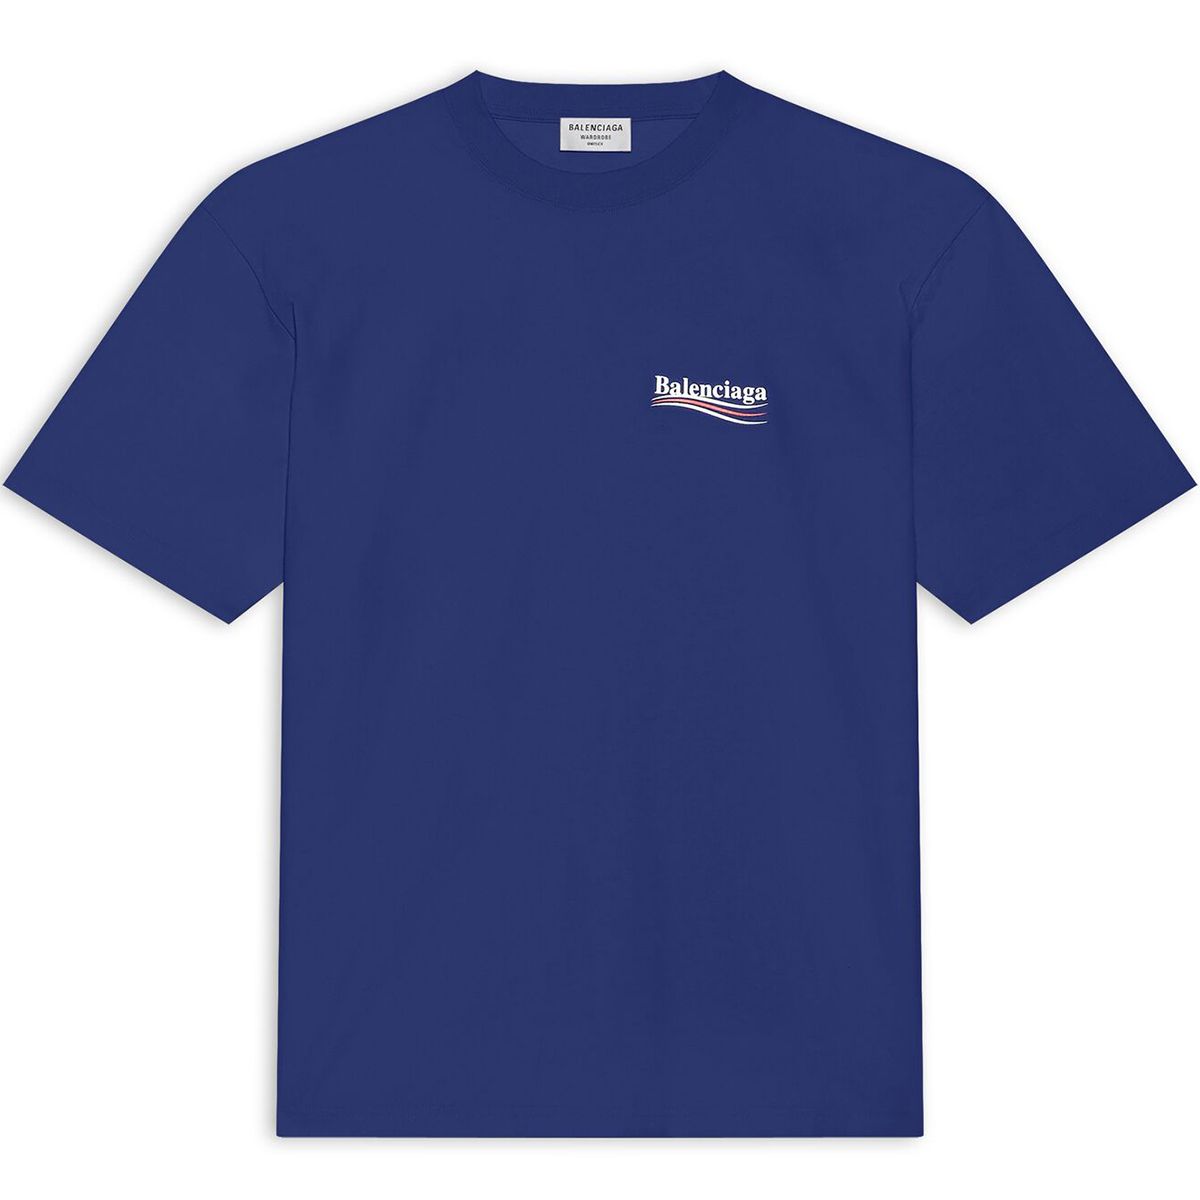 Political Campaign Blue T-Shirt